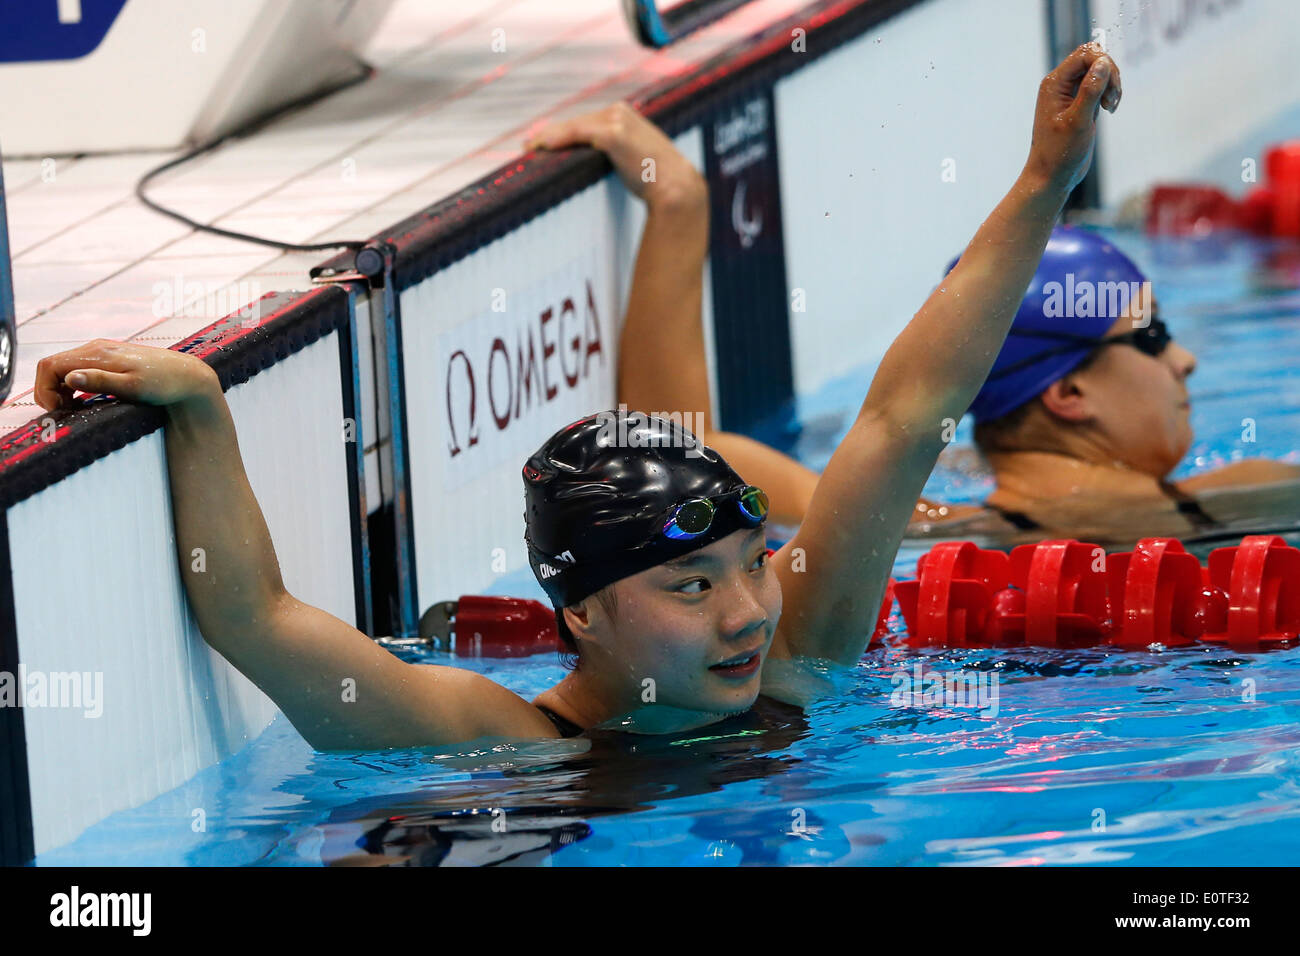 Jiangbo Xia von China feiert Gewinn der Goldmedaille nach der Frauen ist Schwimmen 50m Freistil - S3 letzte Sitzung Wettbewerb im Aquatics Center während der London Paralympischen Spiele 2012 in London, Großbritannien, 7. September 2012 statt. Stockfoto